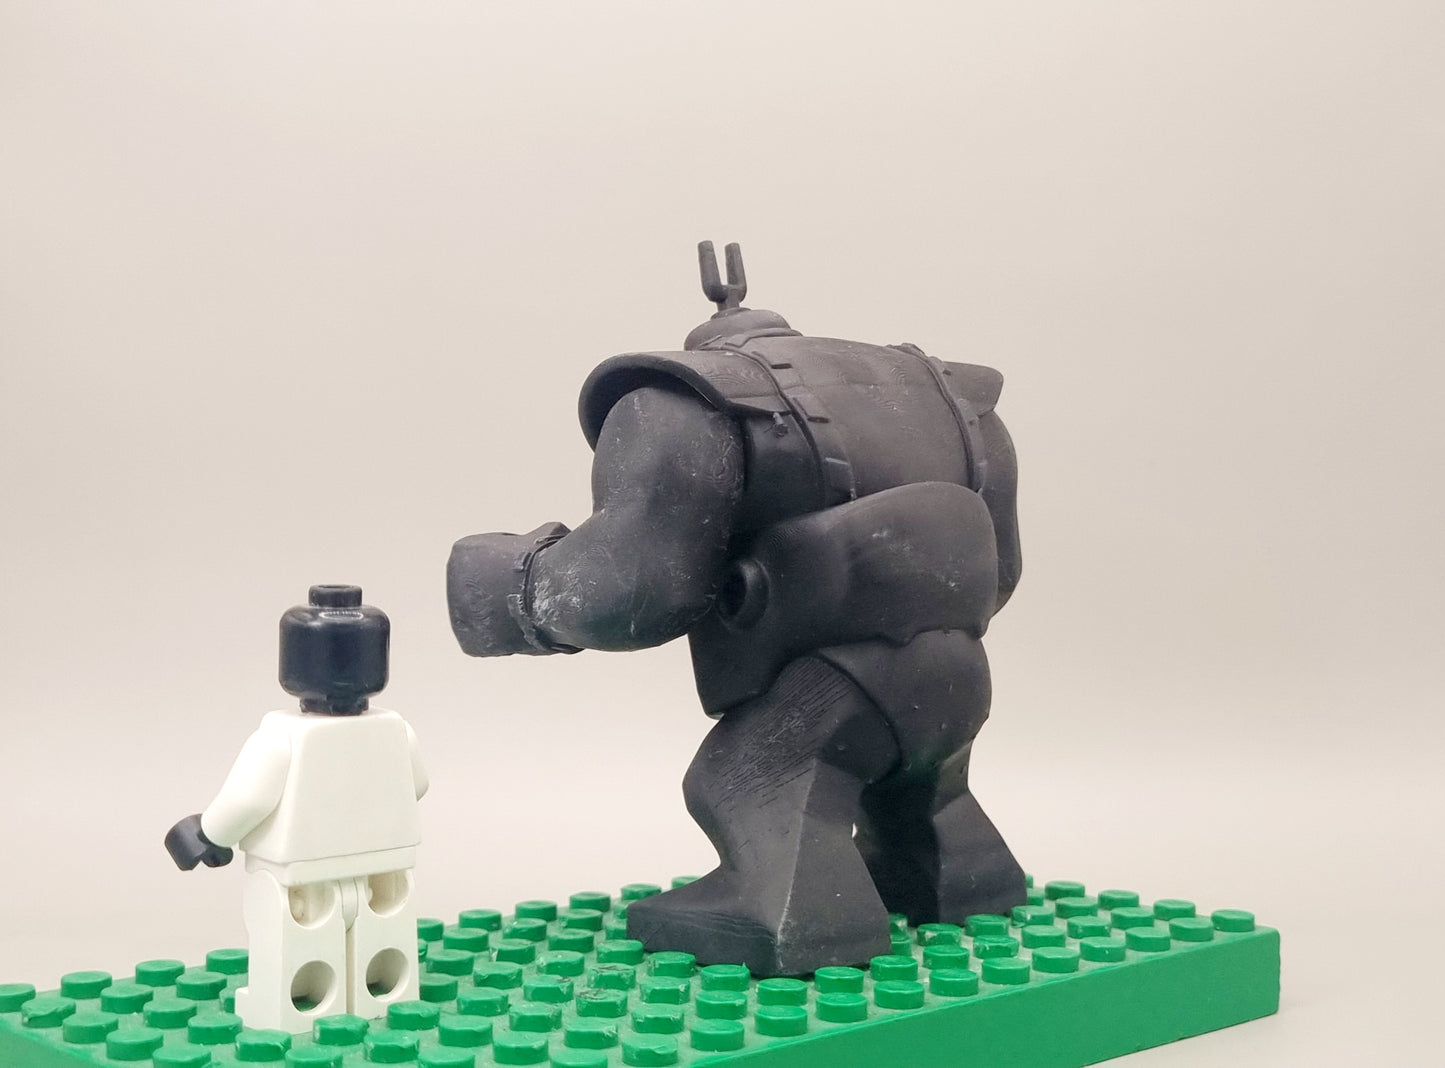 Building toy custom 3D printed tortoise brain enemy big figure!